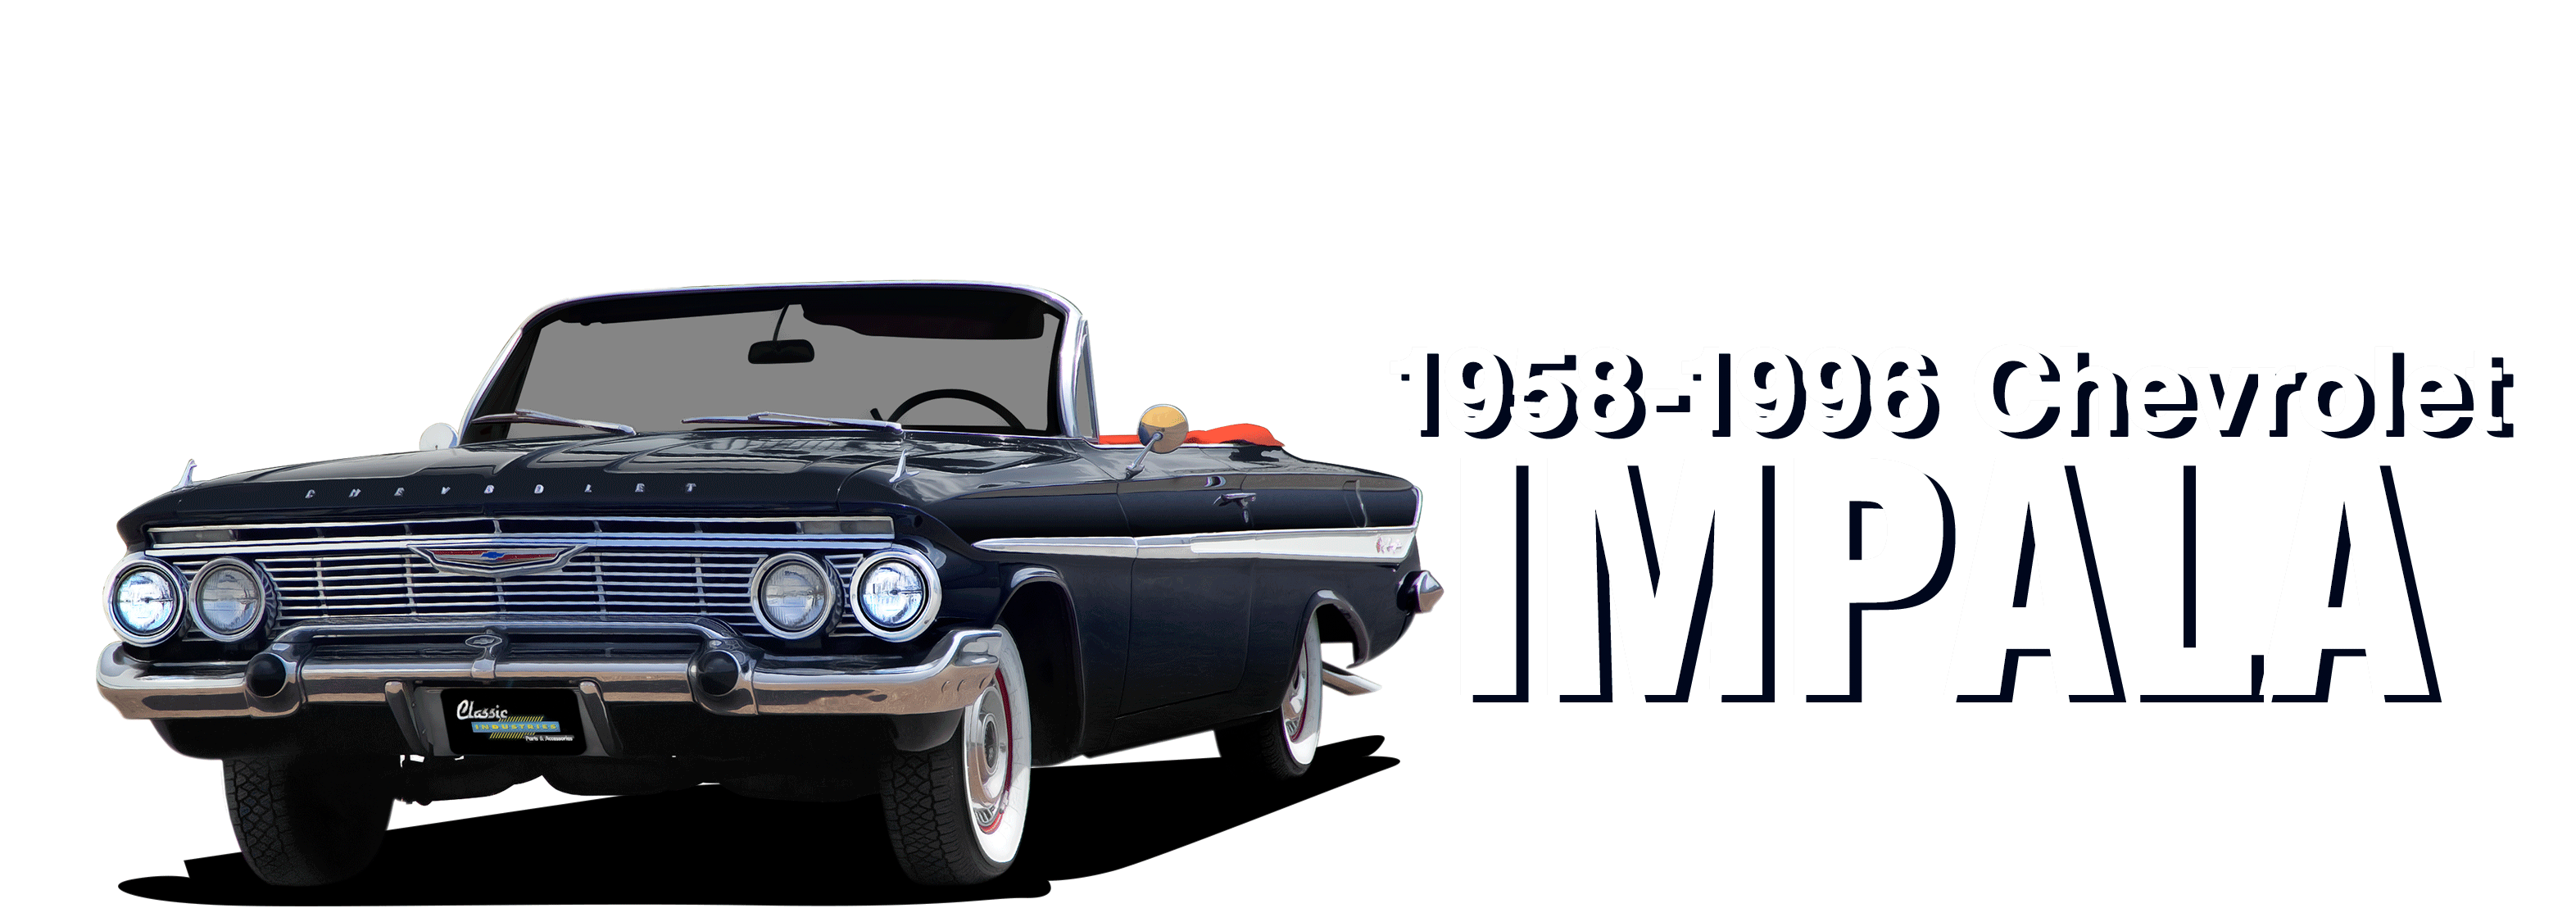 1958-1996 Chevrolet Impala